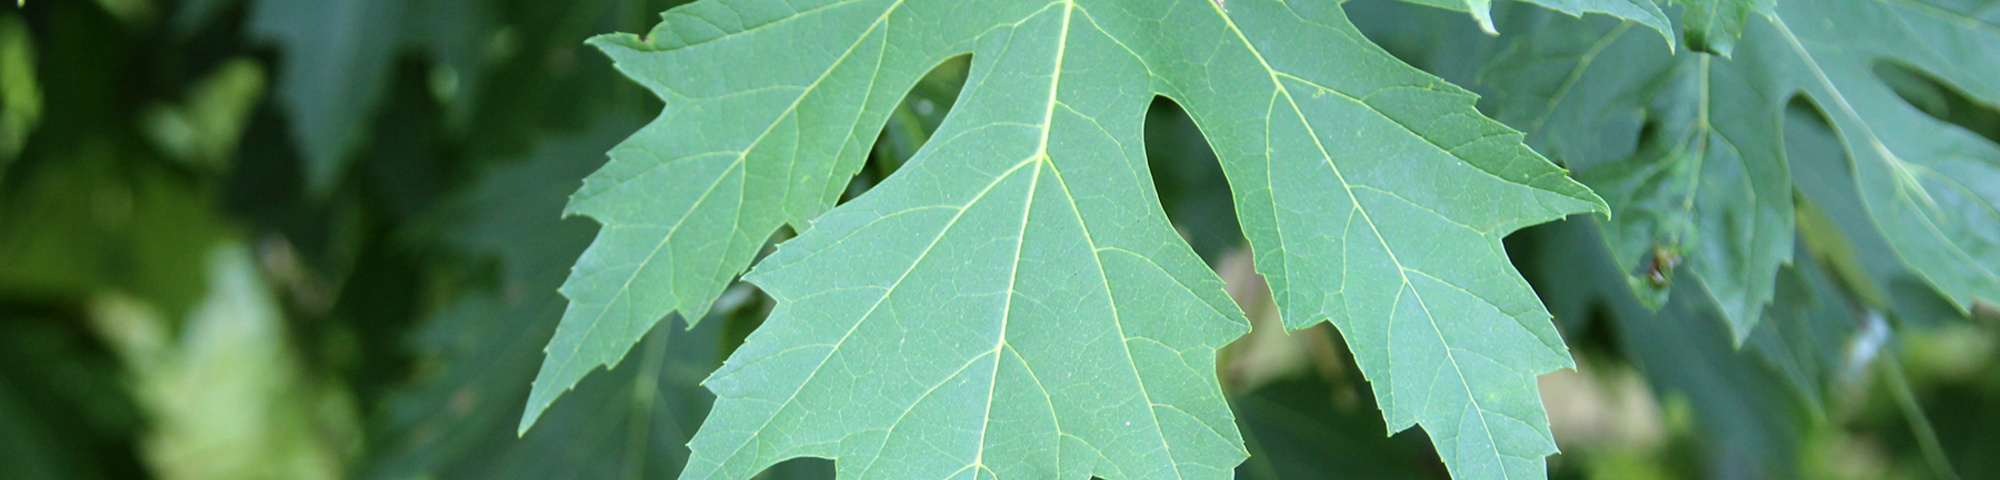 Acer saccharinum 'Laciniatum Wieri'